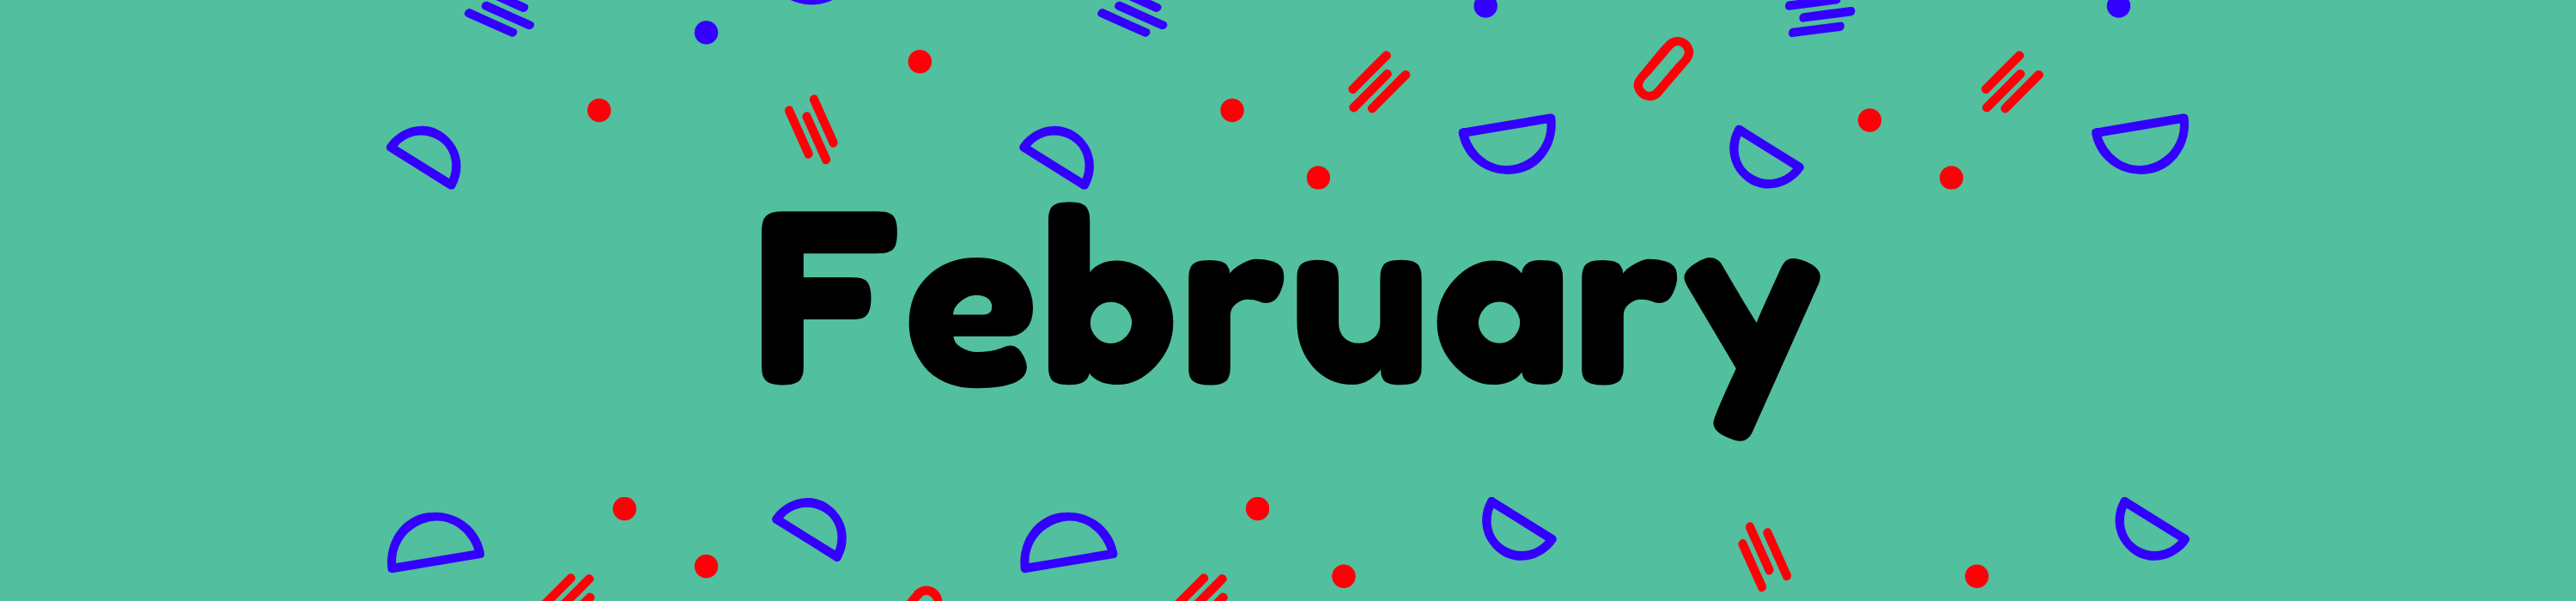 February-banner